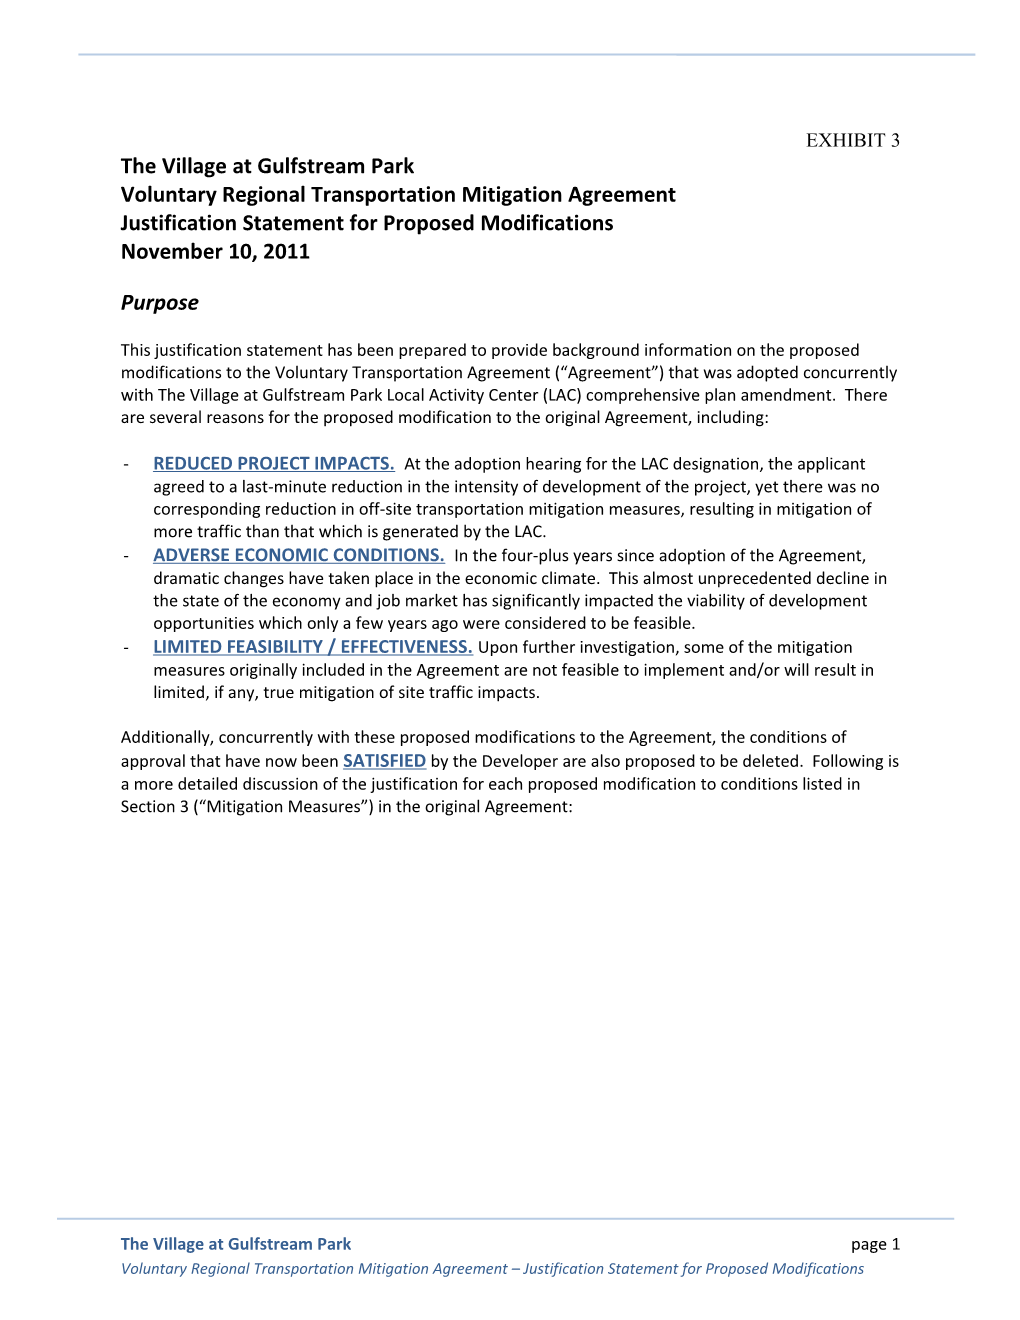 Voluntary Regional Transportation Mitigation Agreement